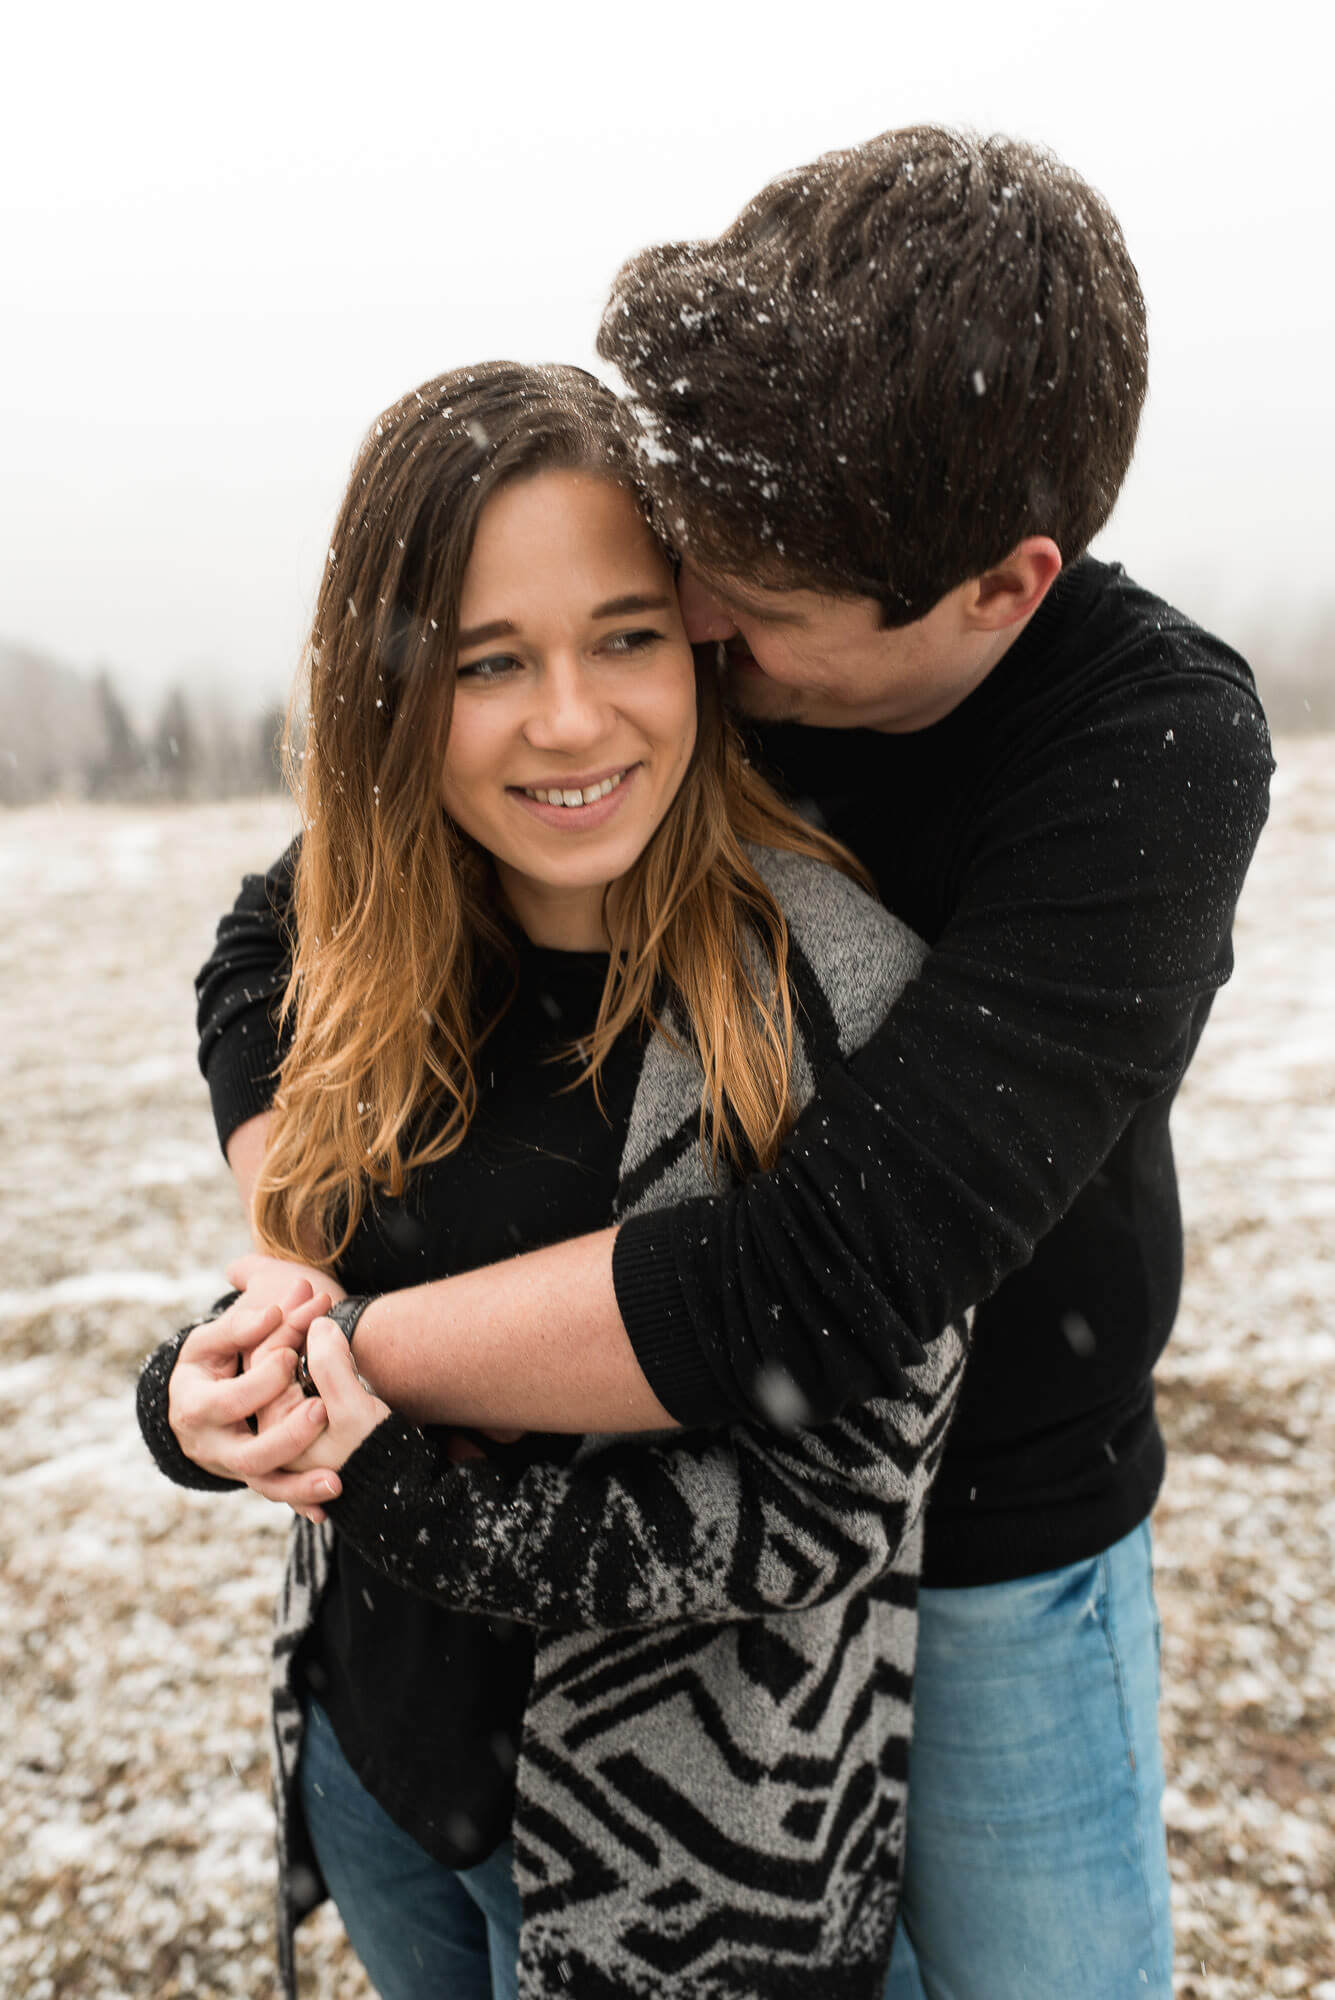 Er umarmt sie bei einem Verlobungsshooting im Winter bei Schnee